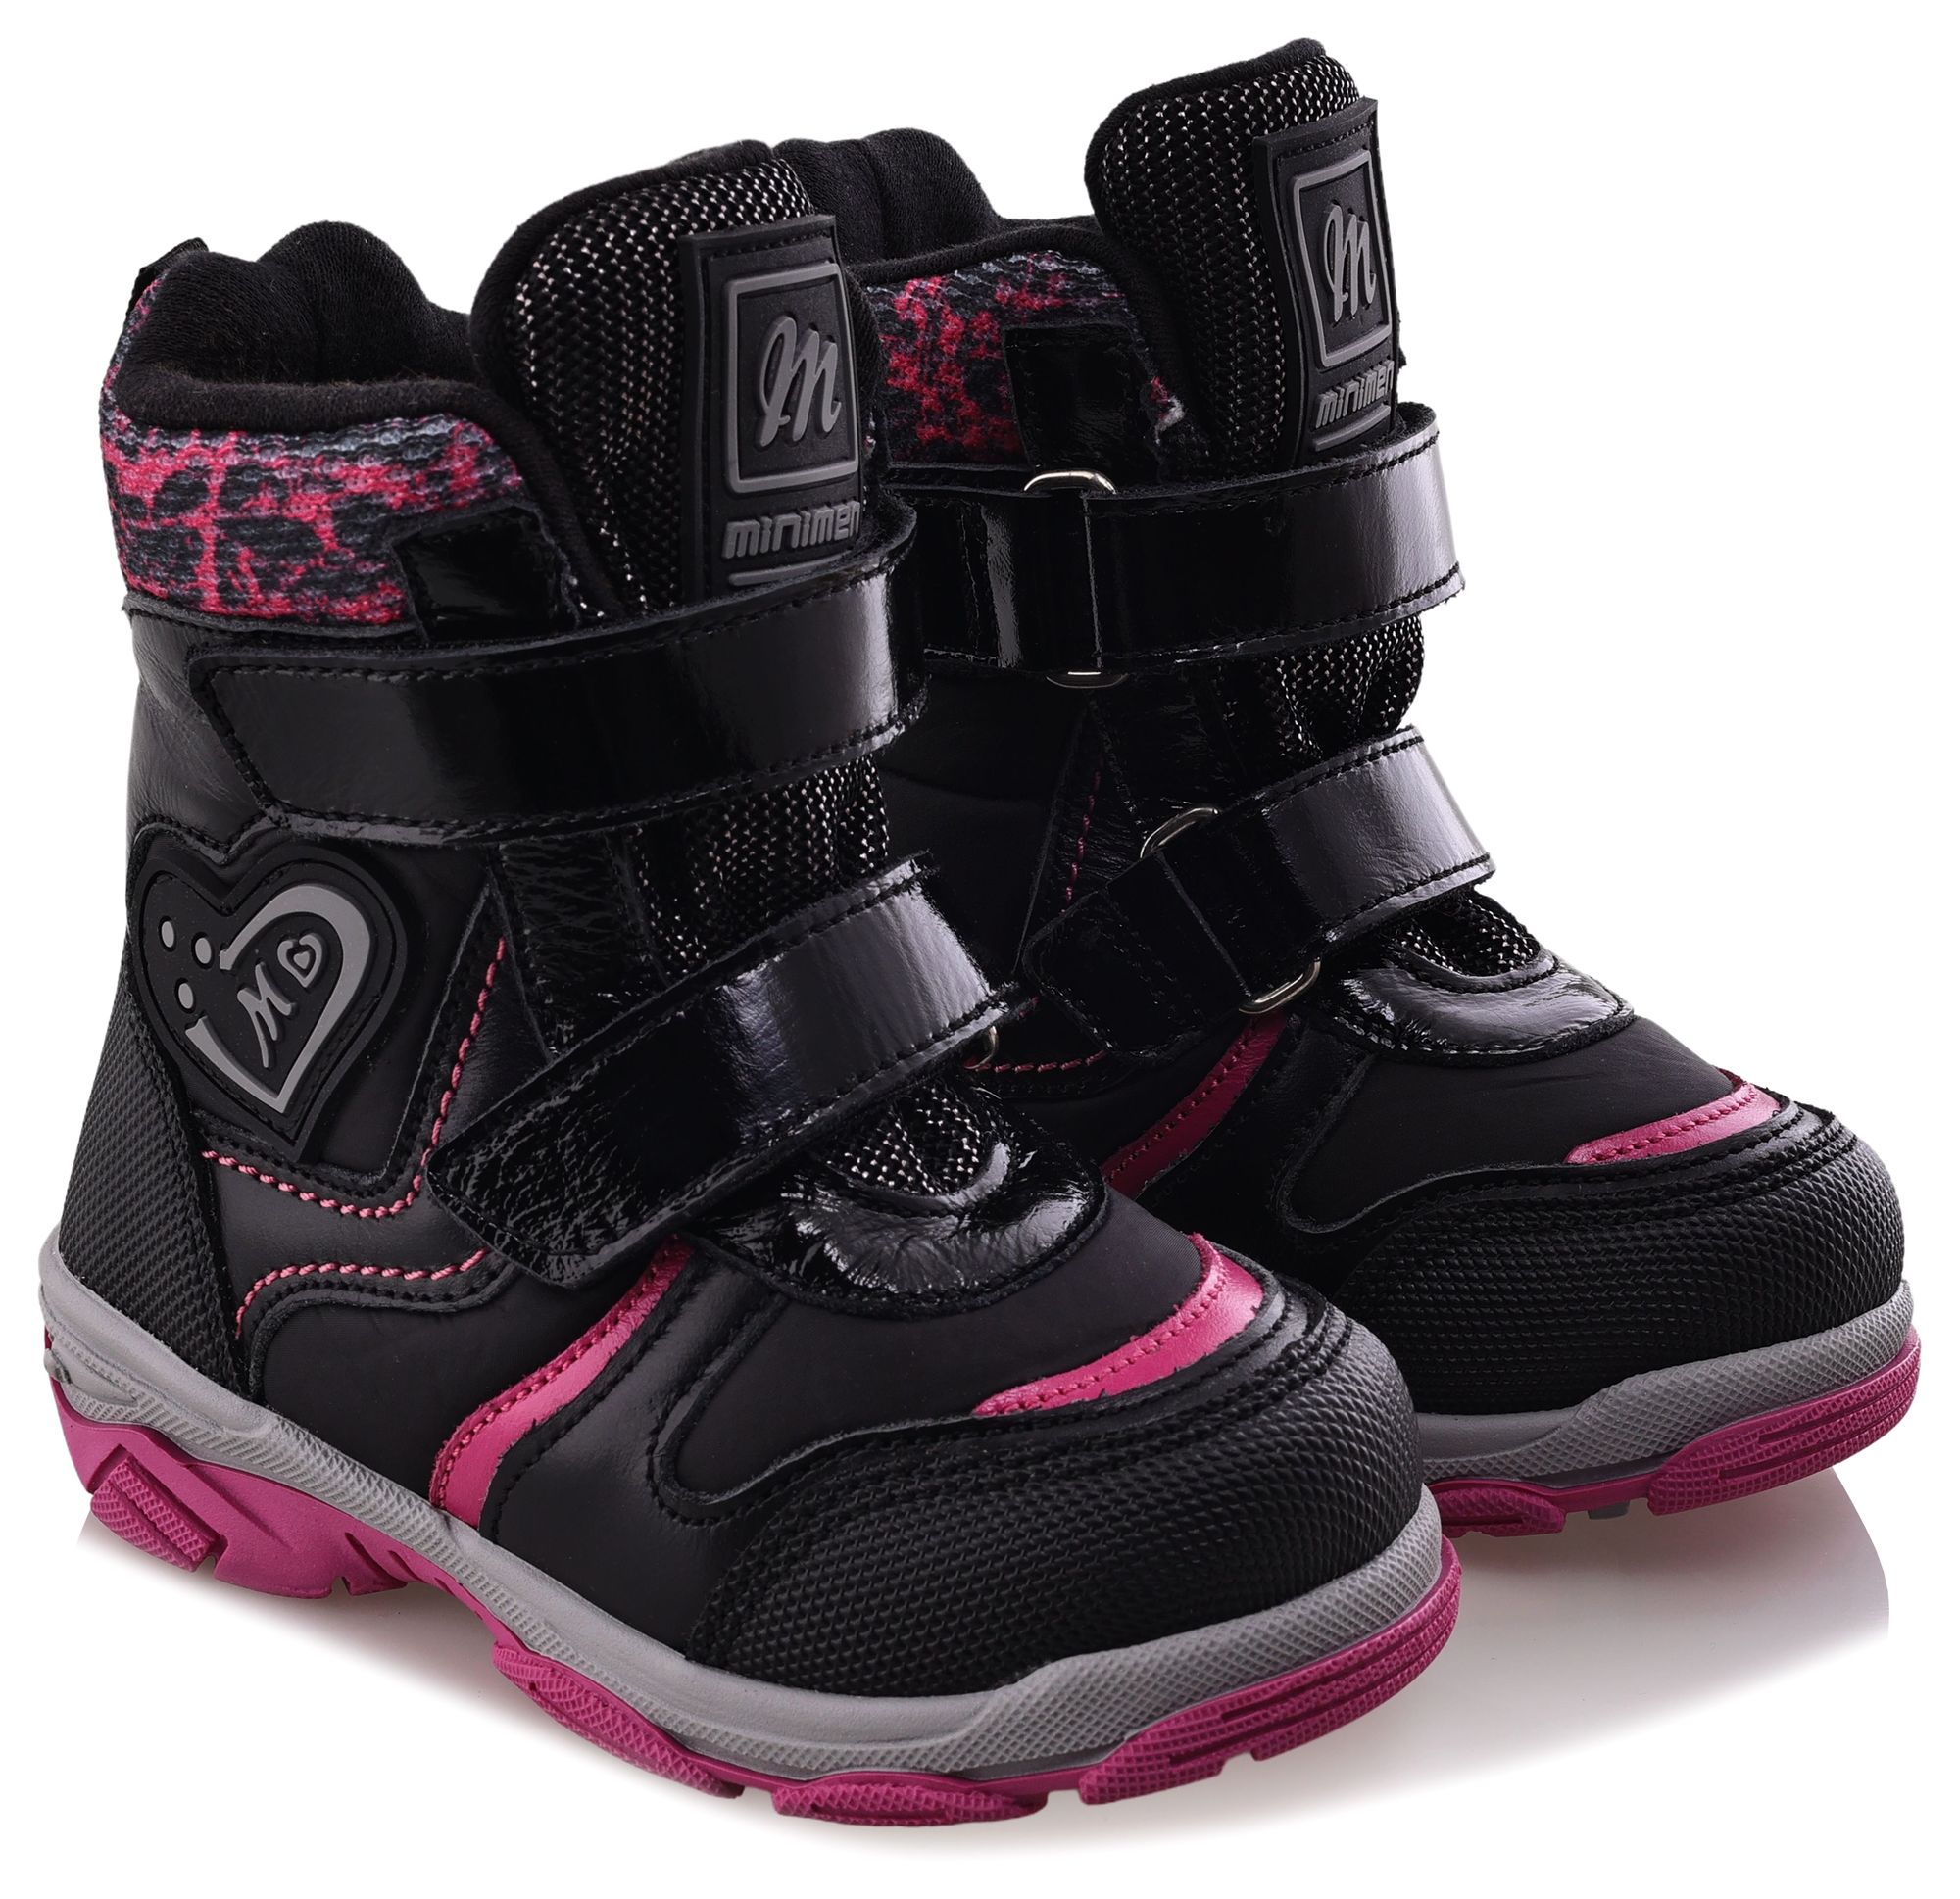 Ботинки Minimen для девочек, чёрные, размер 29, 2656-53-23B-01 ботинки minimen для девочек розовые размер 30 2656 53 23b 02